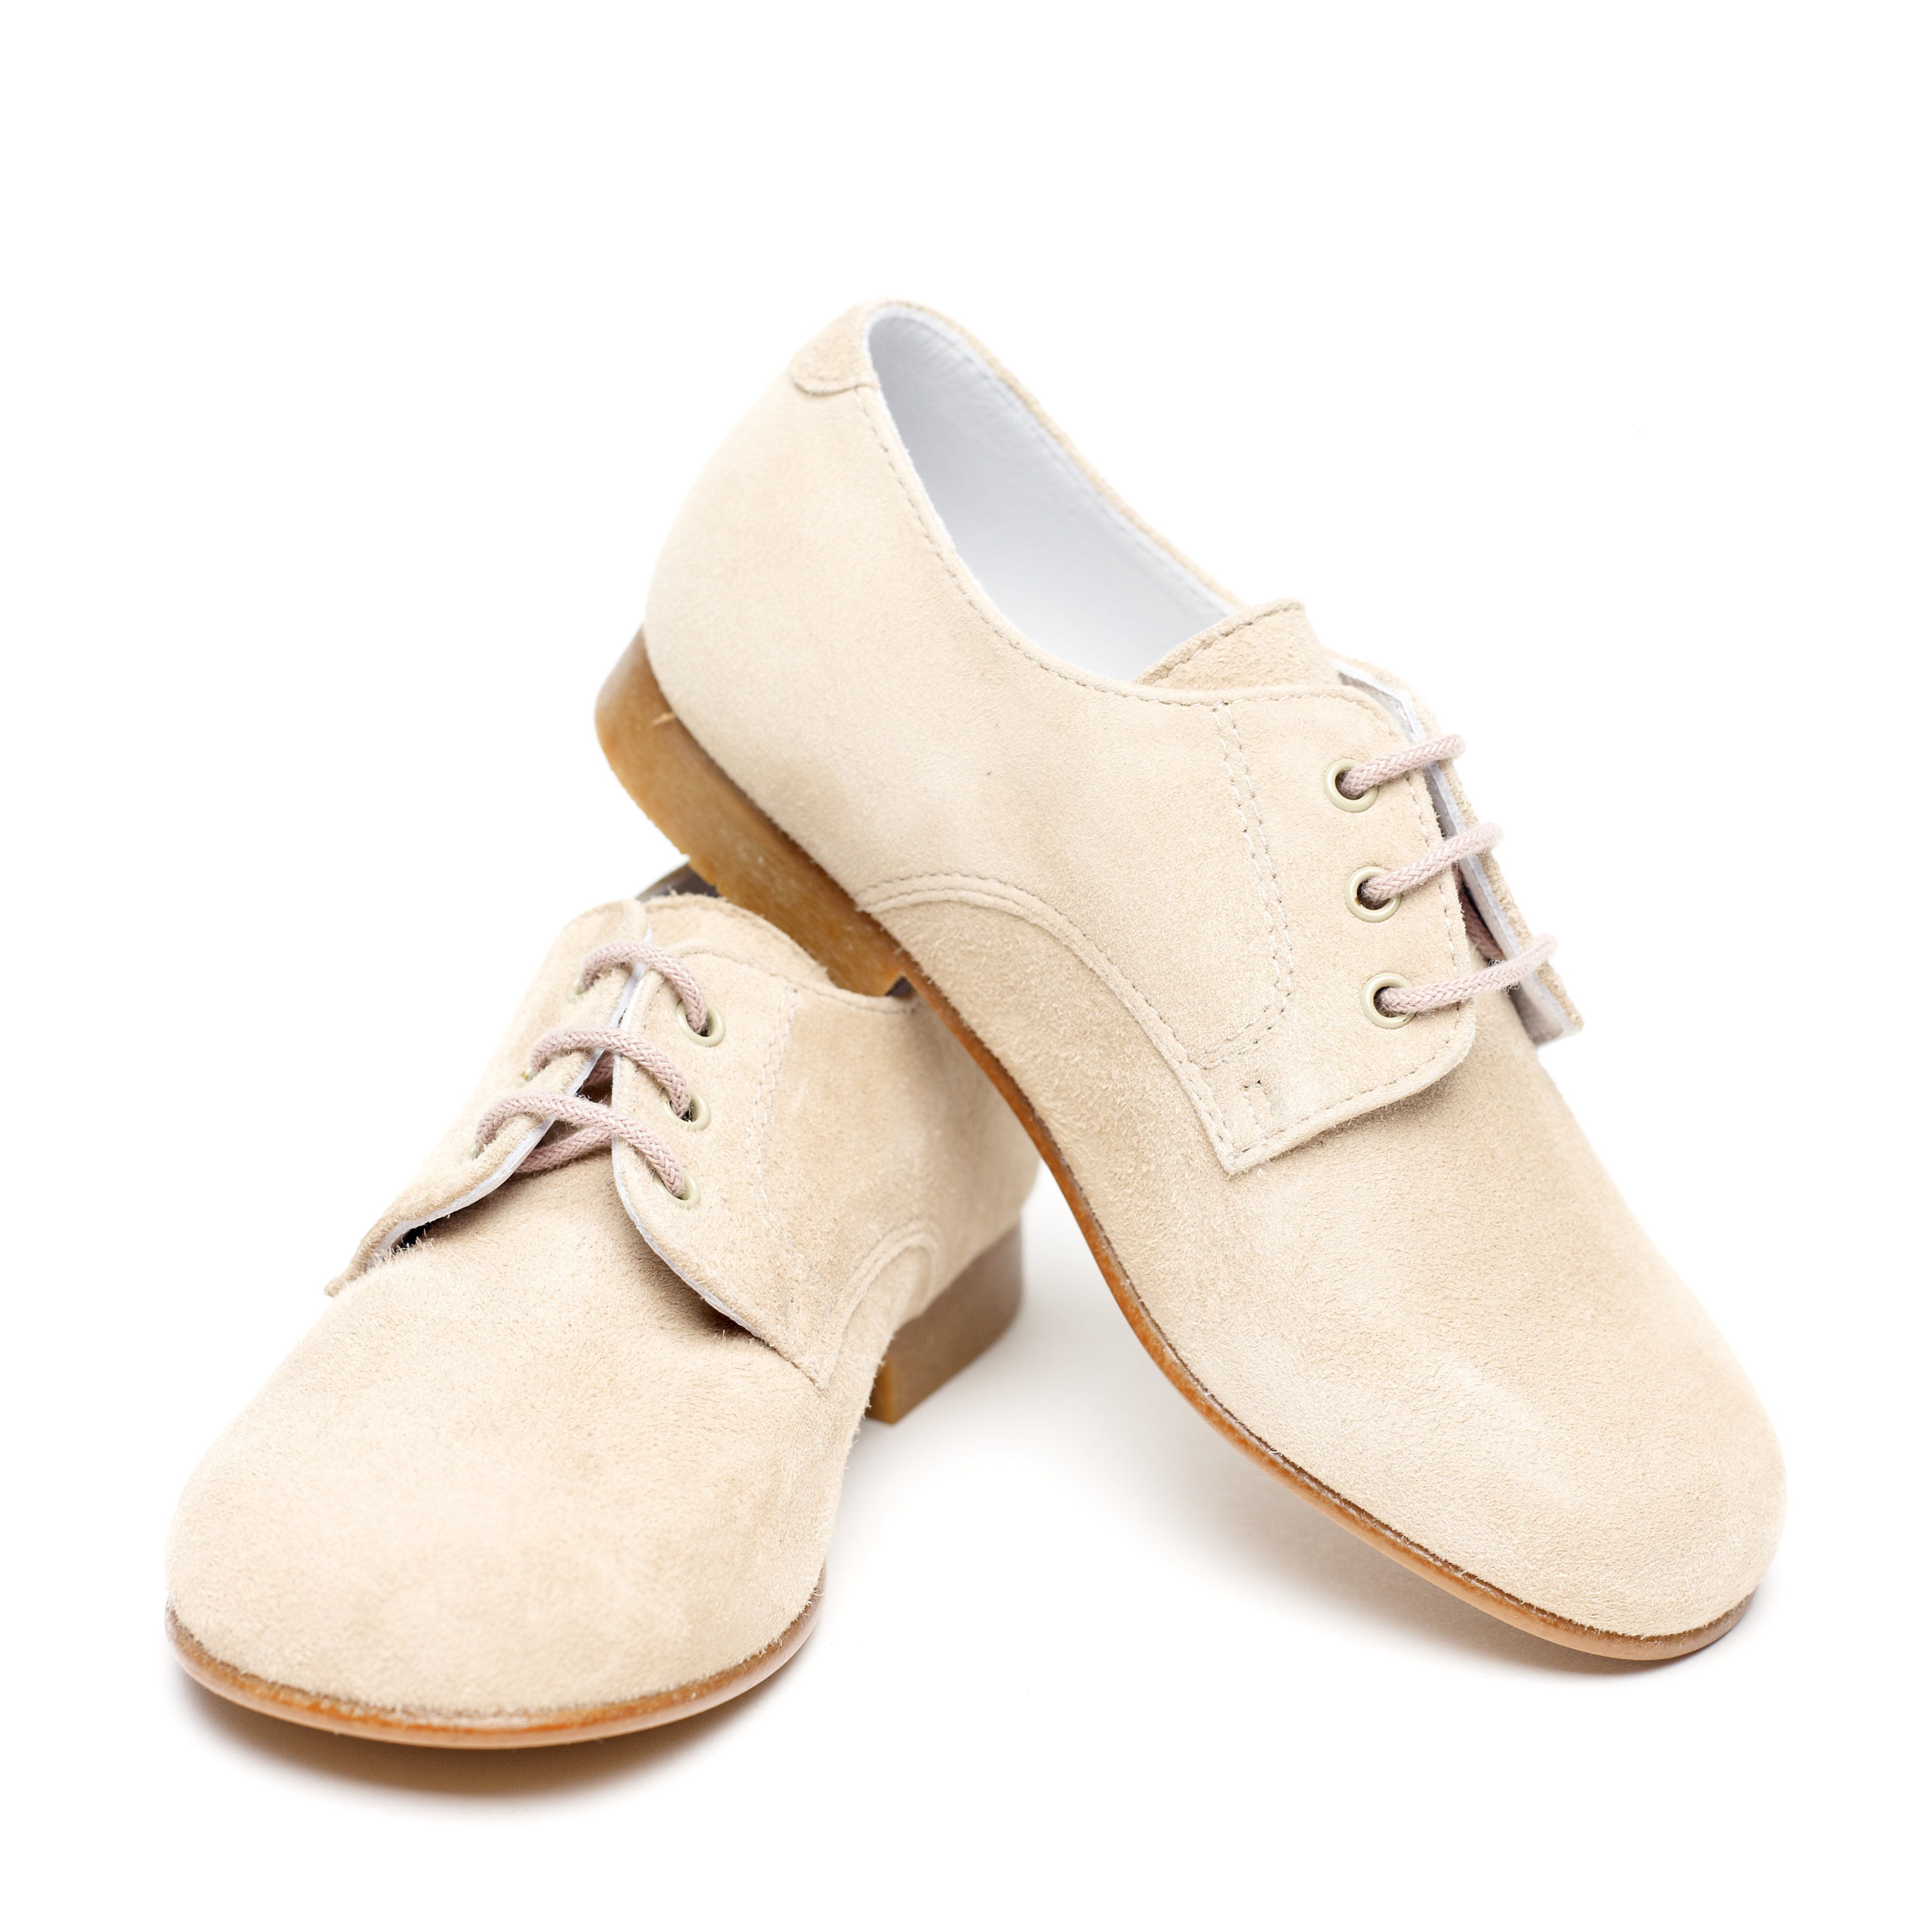 Ad._3_Klasyczne zakryte buty typu derby, z pięknego zamszu w kolorze piaskowym_269 zł.